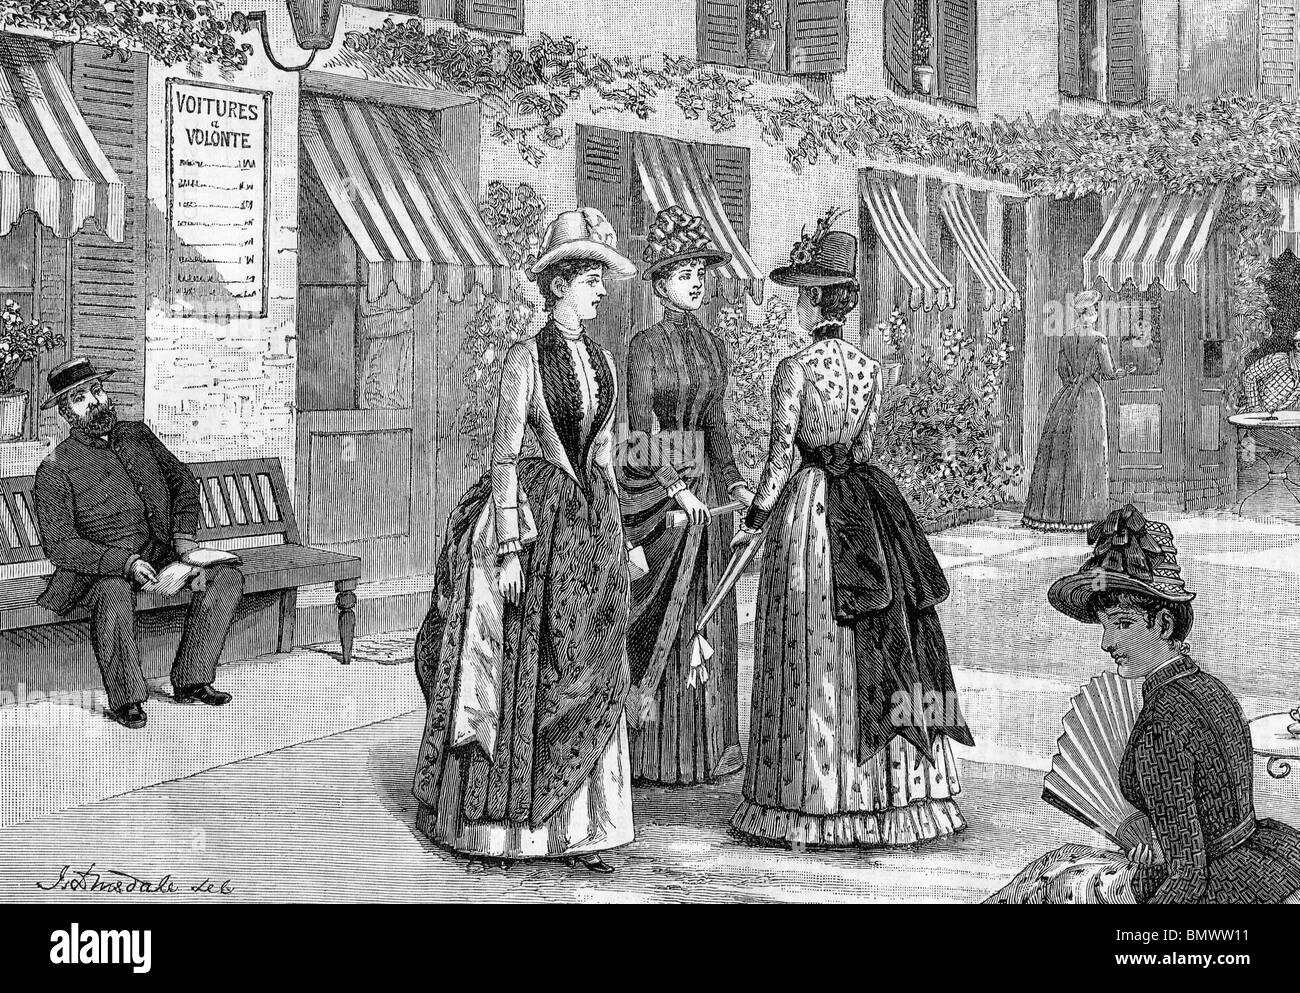 Costumes en plein air, fin des années 1800 Banque D'Images